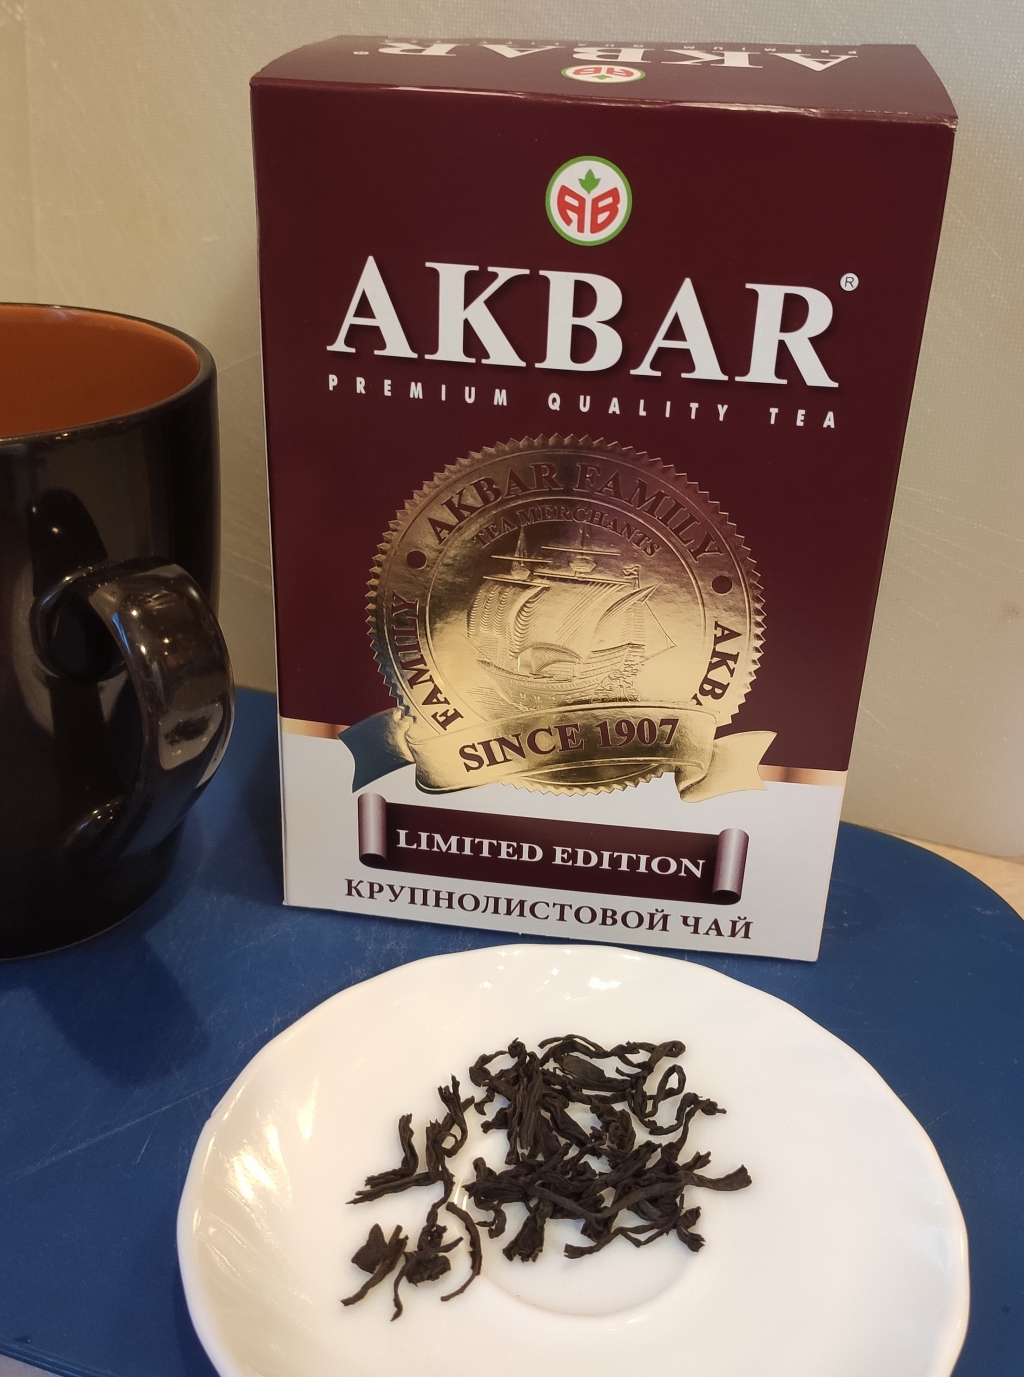 Черный чай Akbar Limited Edition крупнолистовой - Любимый черный чай